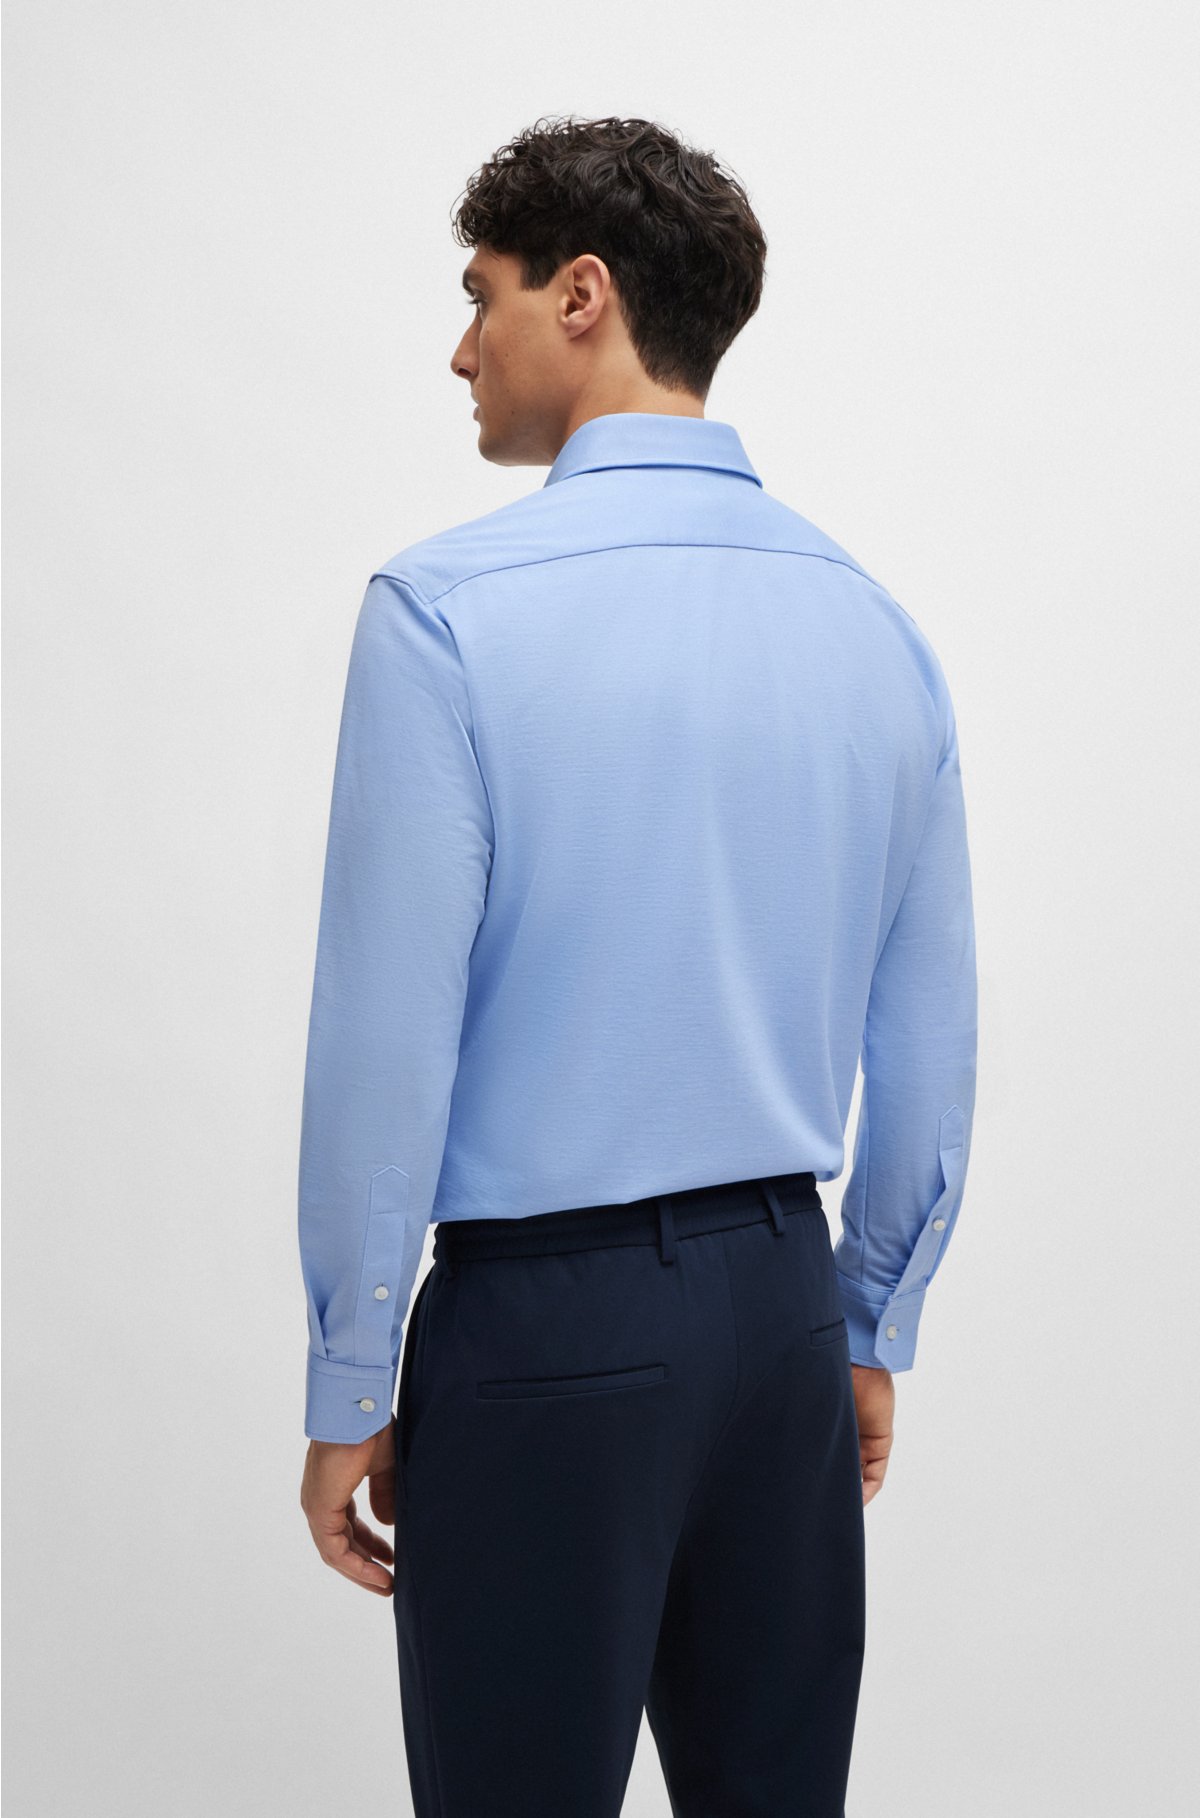 Regular-fit shirt in structured cotton-blend jersey, Light Blue